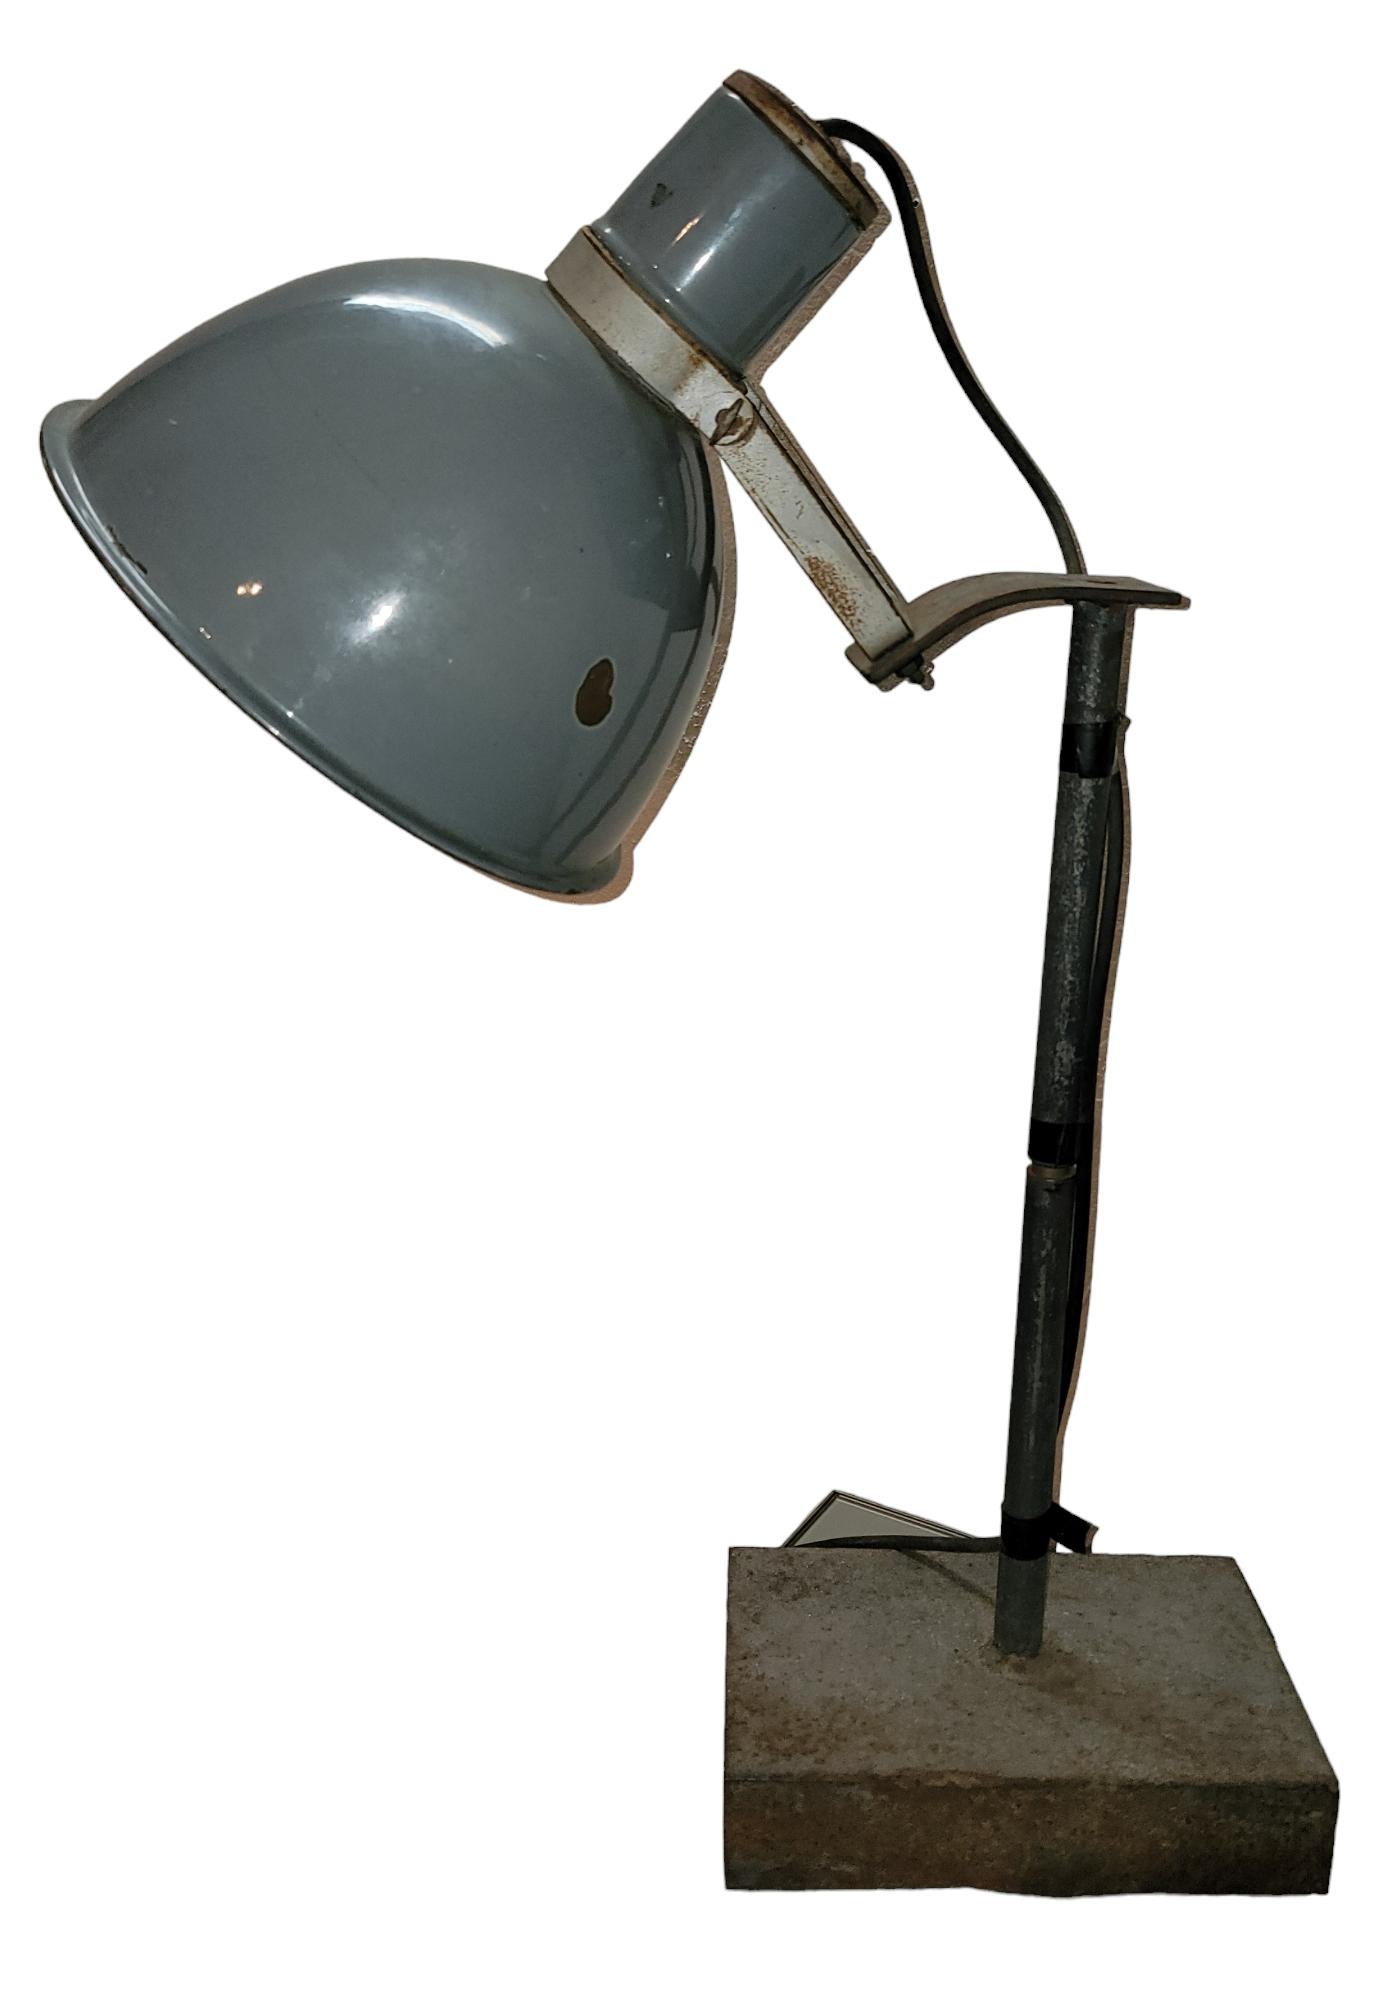 Industrielle Metalltischlampe mit schwerem Metallsockel. Der hohe Stiel ist aus Metall und der obere Schirm ist fest mit dem Stiel verbunden und kann verstellt werden.  ist ein dünnes Metall.  Maße 27h x 20w x 6d